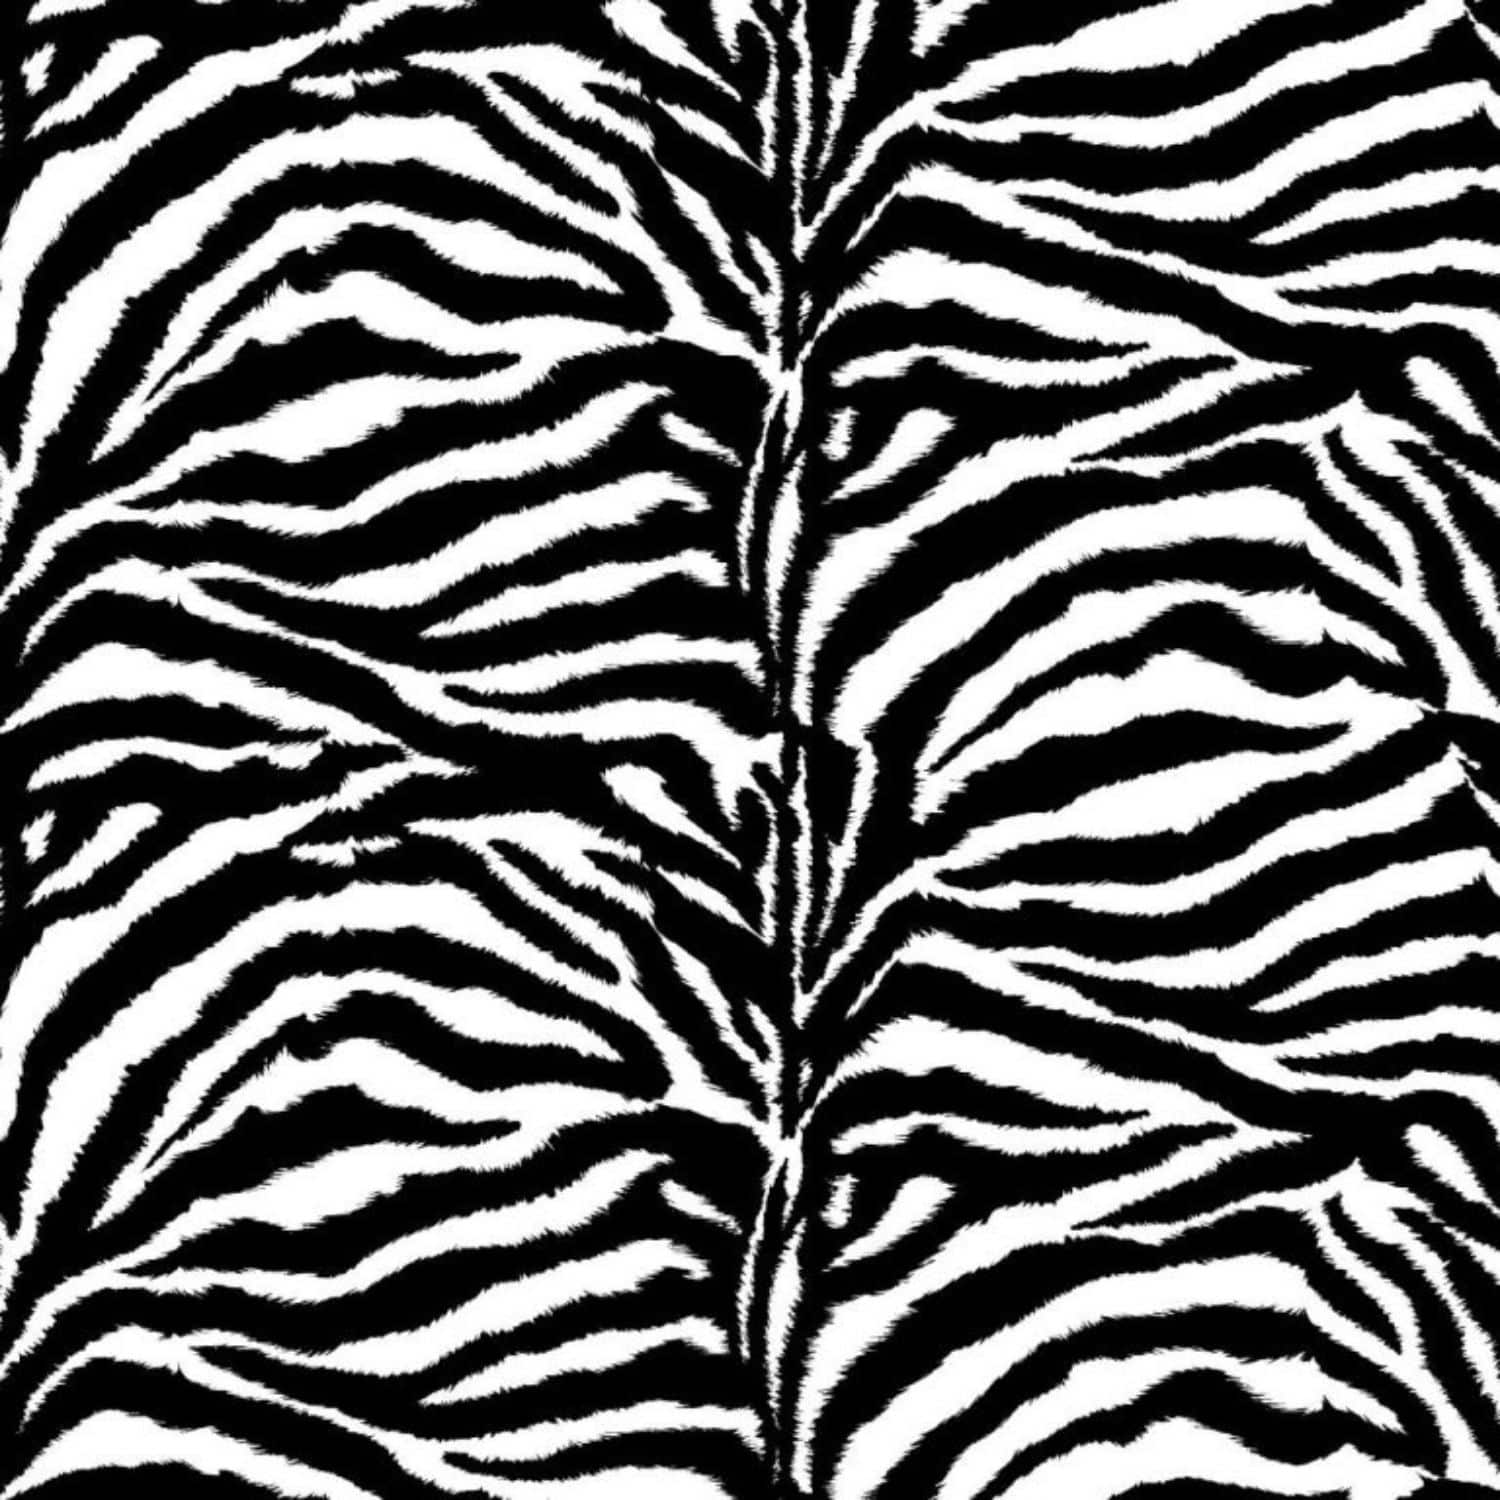 copripiumino-zebrato-quadrifoglio-cotone-fantasia-animalie-dettaglio